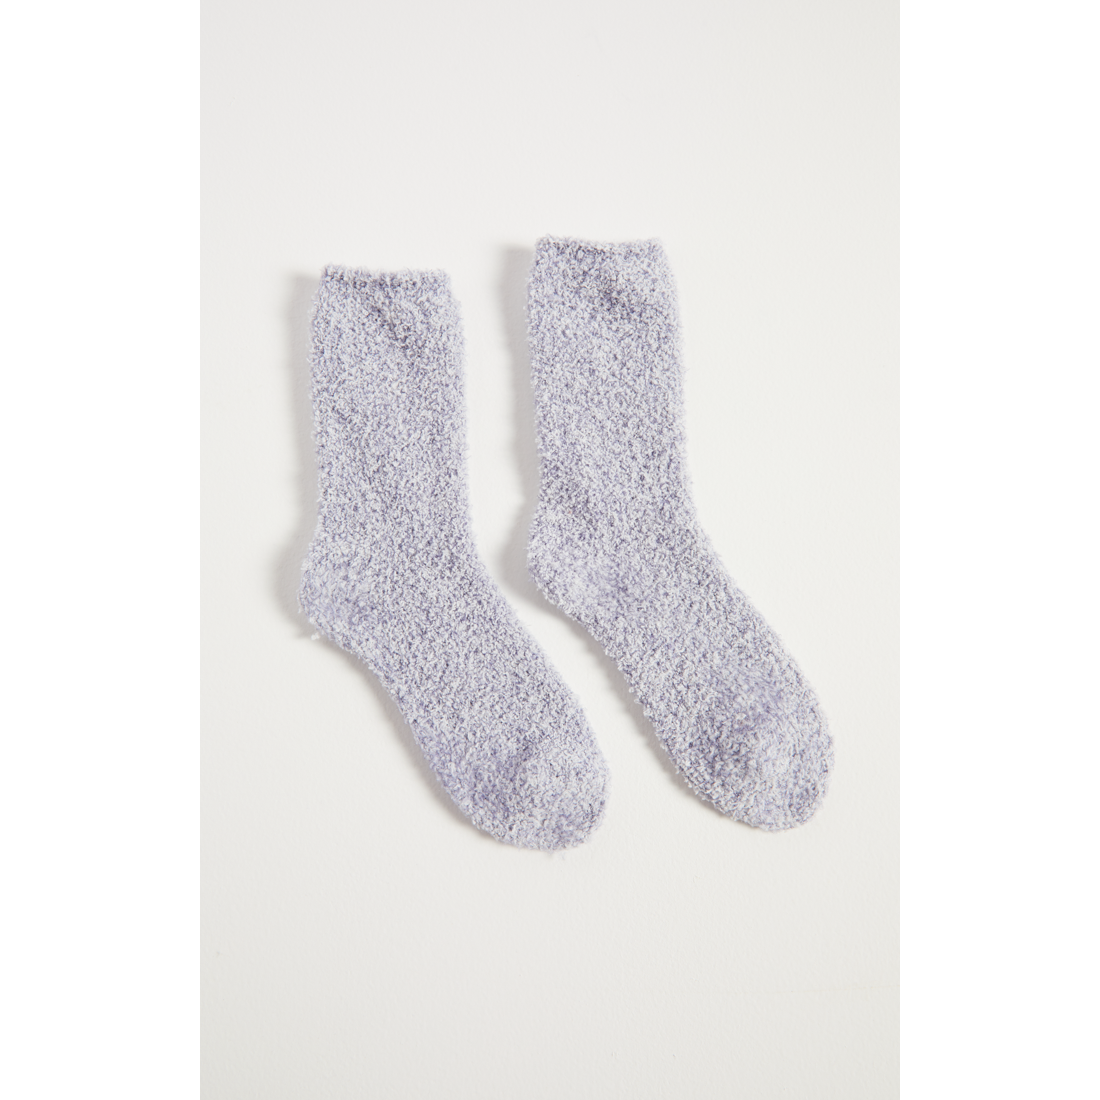 2 Pack Plush Socks in Dusty Denim